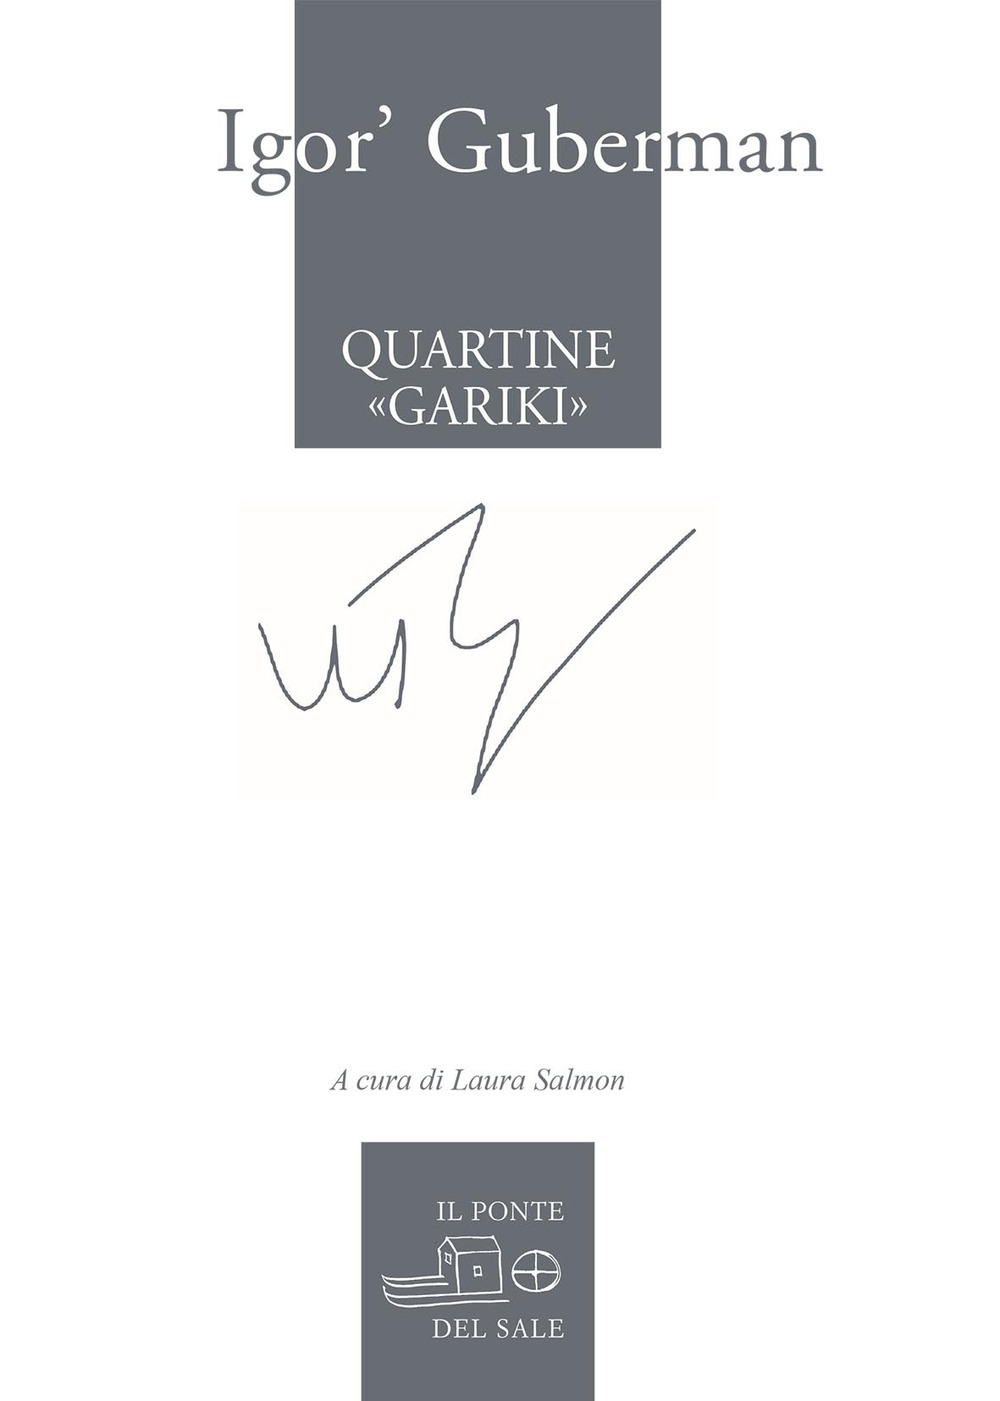 Libri Guberman Igor' - Quartine Gariki (1994-1997). Testo Russo A Fronte. Ediz. Multilingue NUOVO SIGILLATO, EDIZIONE DEL 24/04/2020 SUBITO DISPONIBILE